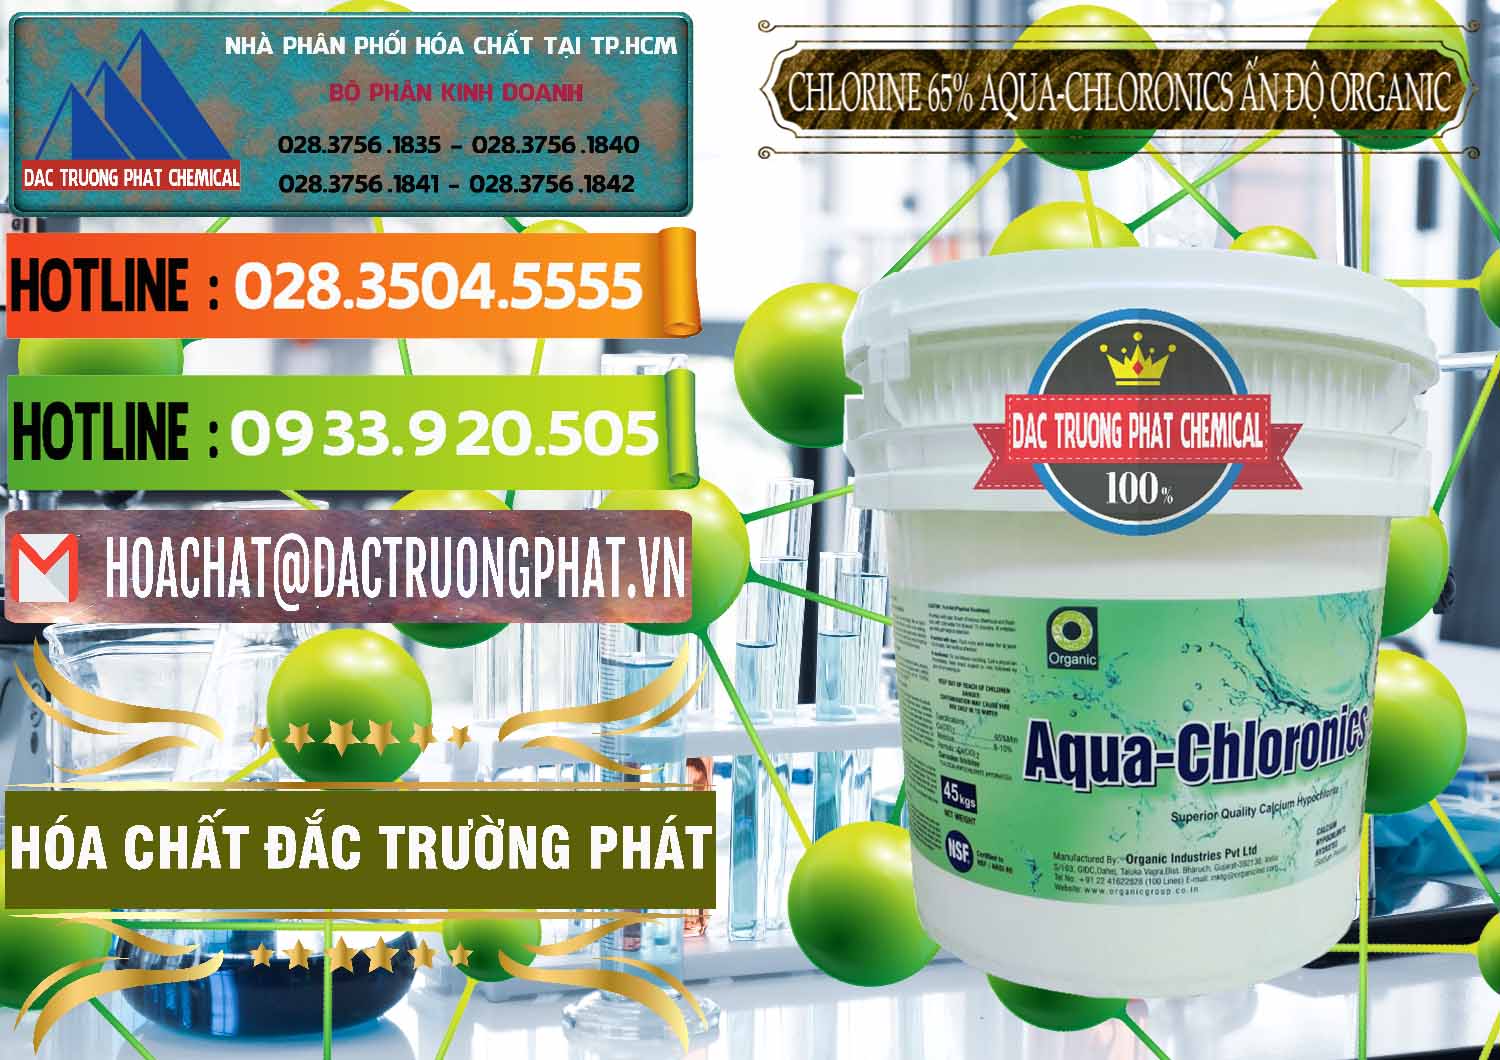 Bán và phân phối Chlorine – Clorin 65% Aqua-Chloronics Ấn Độ Organic India - 0210 - Nơi cung ứng ( phân phối ) hóa chất tại TP.HCM - cungcaphoachat.com.vn